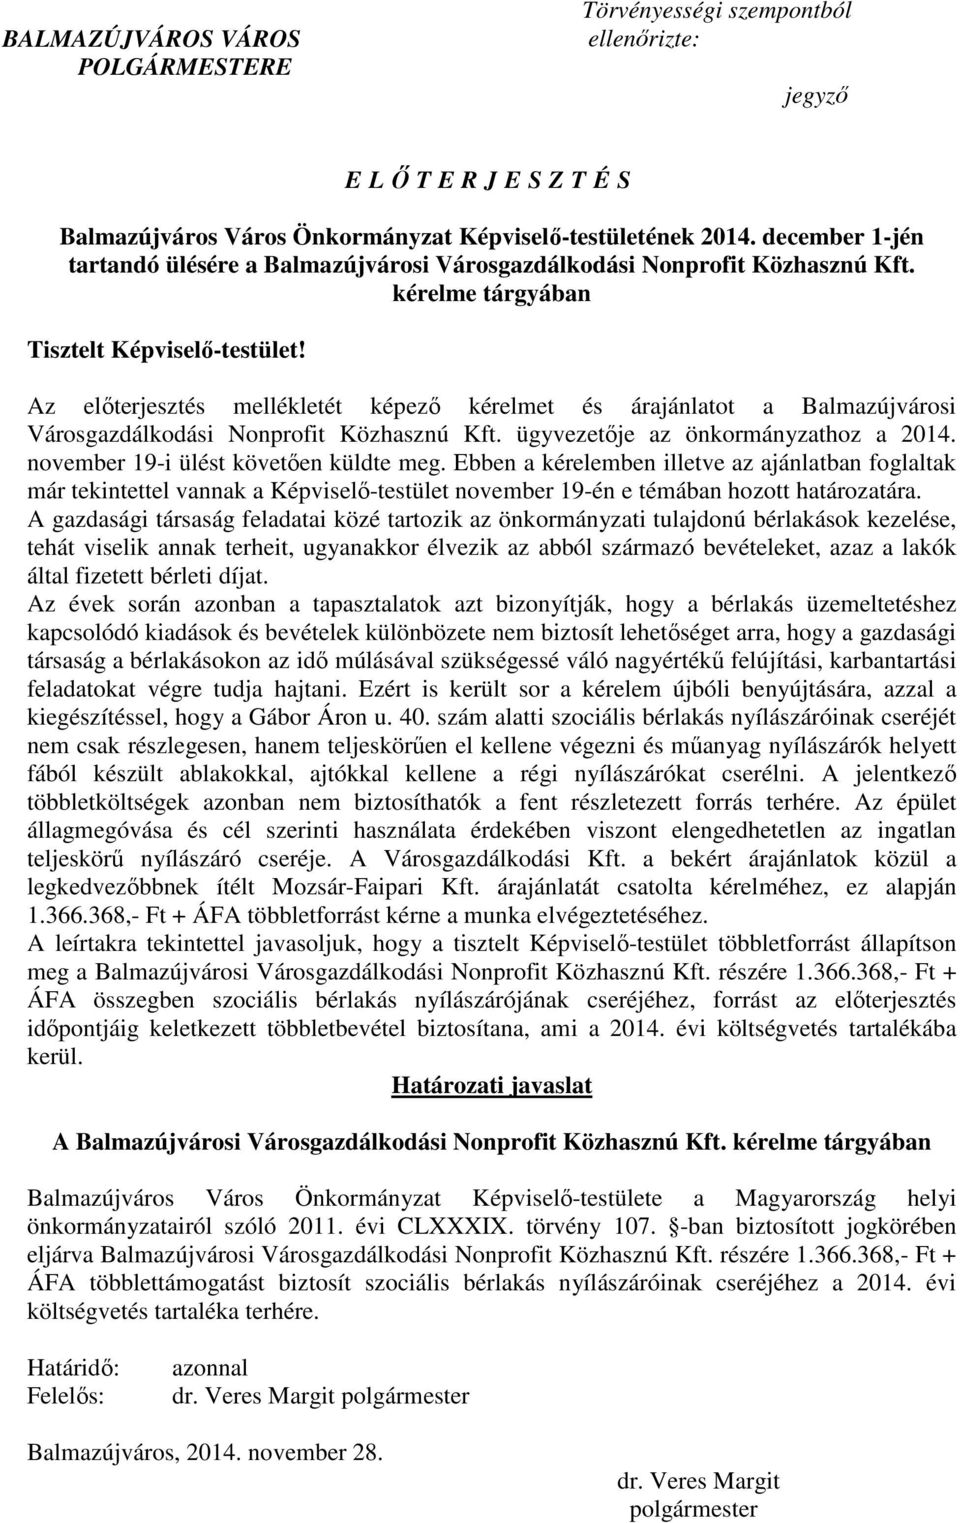 Az elıterjesztés mellékletét képezı kérelmet és árajánlatot a Balmazújvárosi Városgazdálkodási Nonprofit Közhasznú Kft. ügyvezetıje az önkormányzathoz a 2014. november 19-i ülést követıen küldte meg.